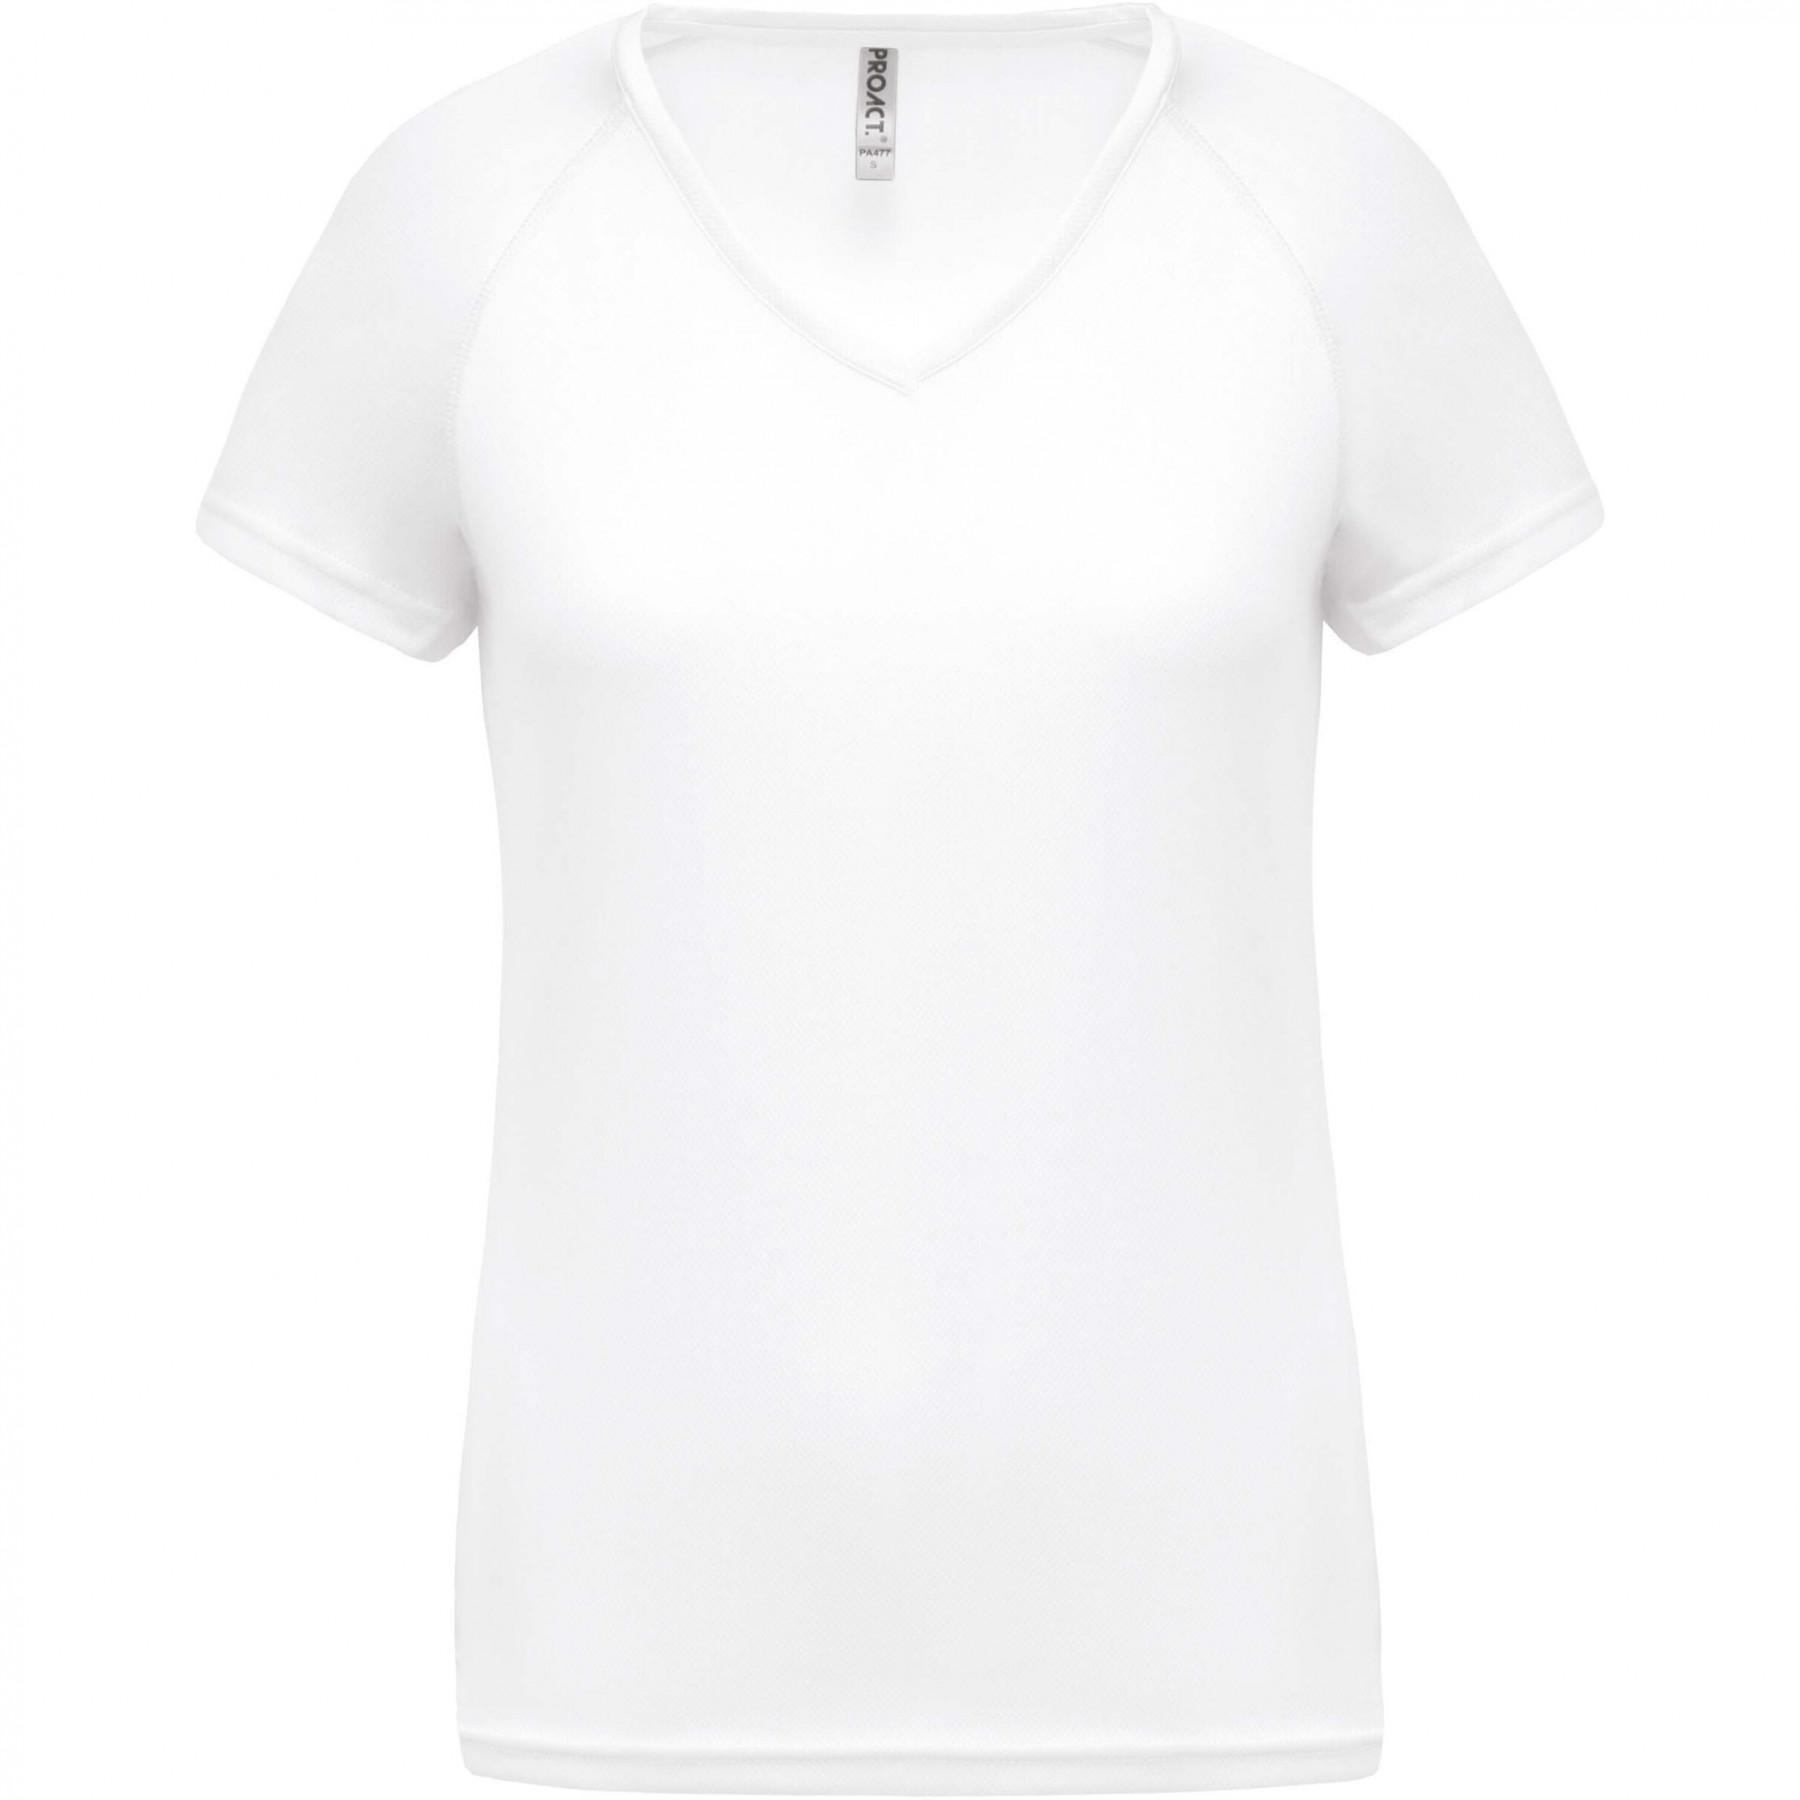 Damen-T-Shirt mit V-Ausschnitt Proact Sport blanc